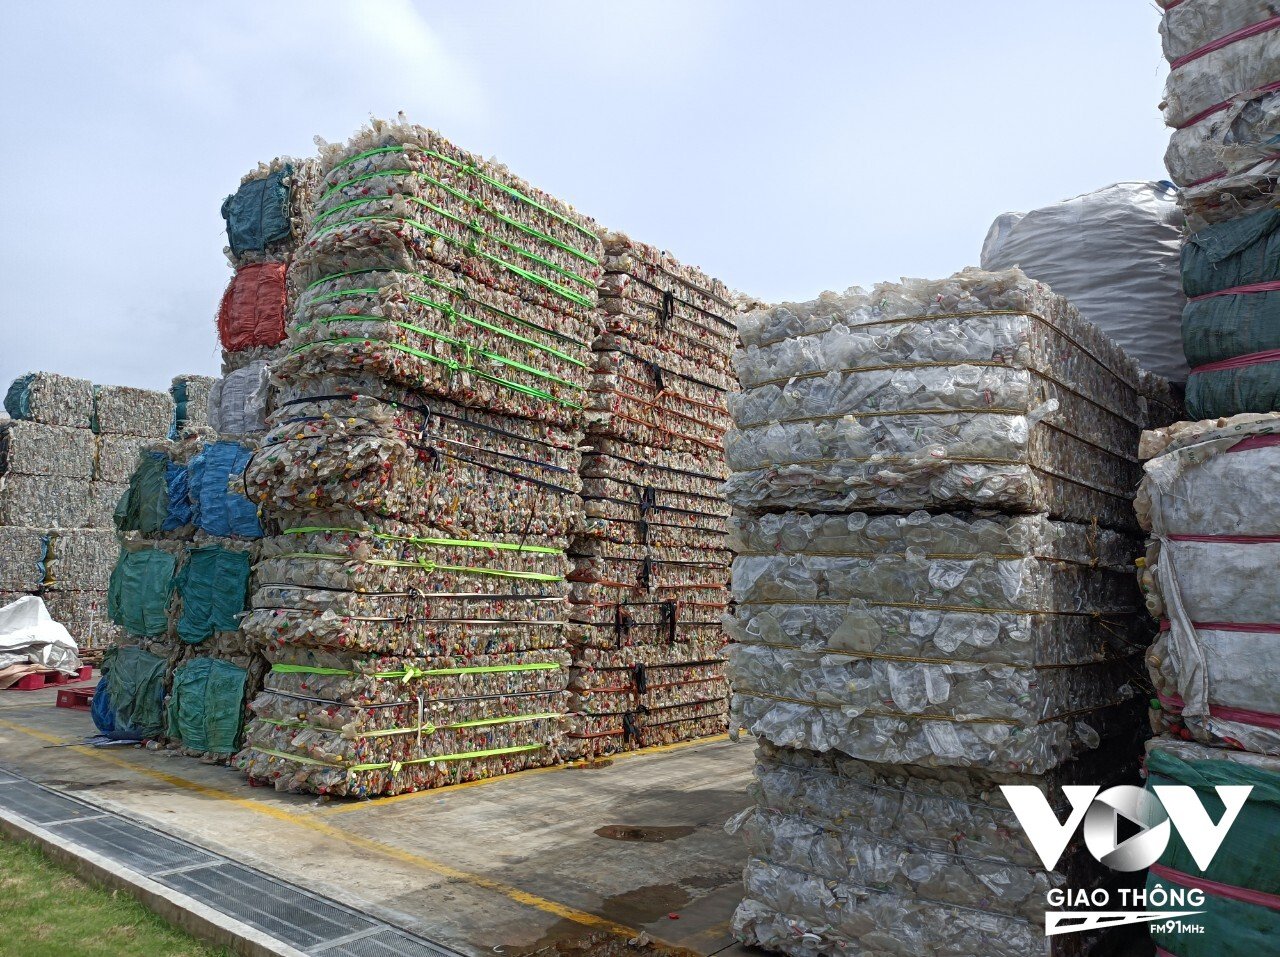 Trong năm ngoái, nhà máy nhựa tái chế Duy Tân đã tái chế hơn 1,3 tỷ chai nhựa được thu gom trong nước